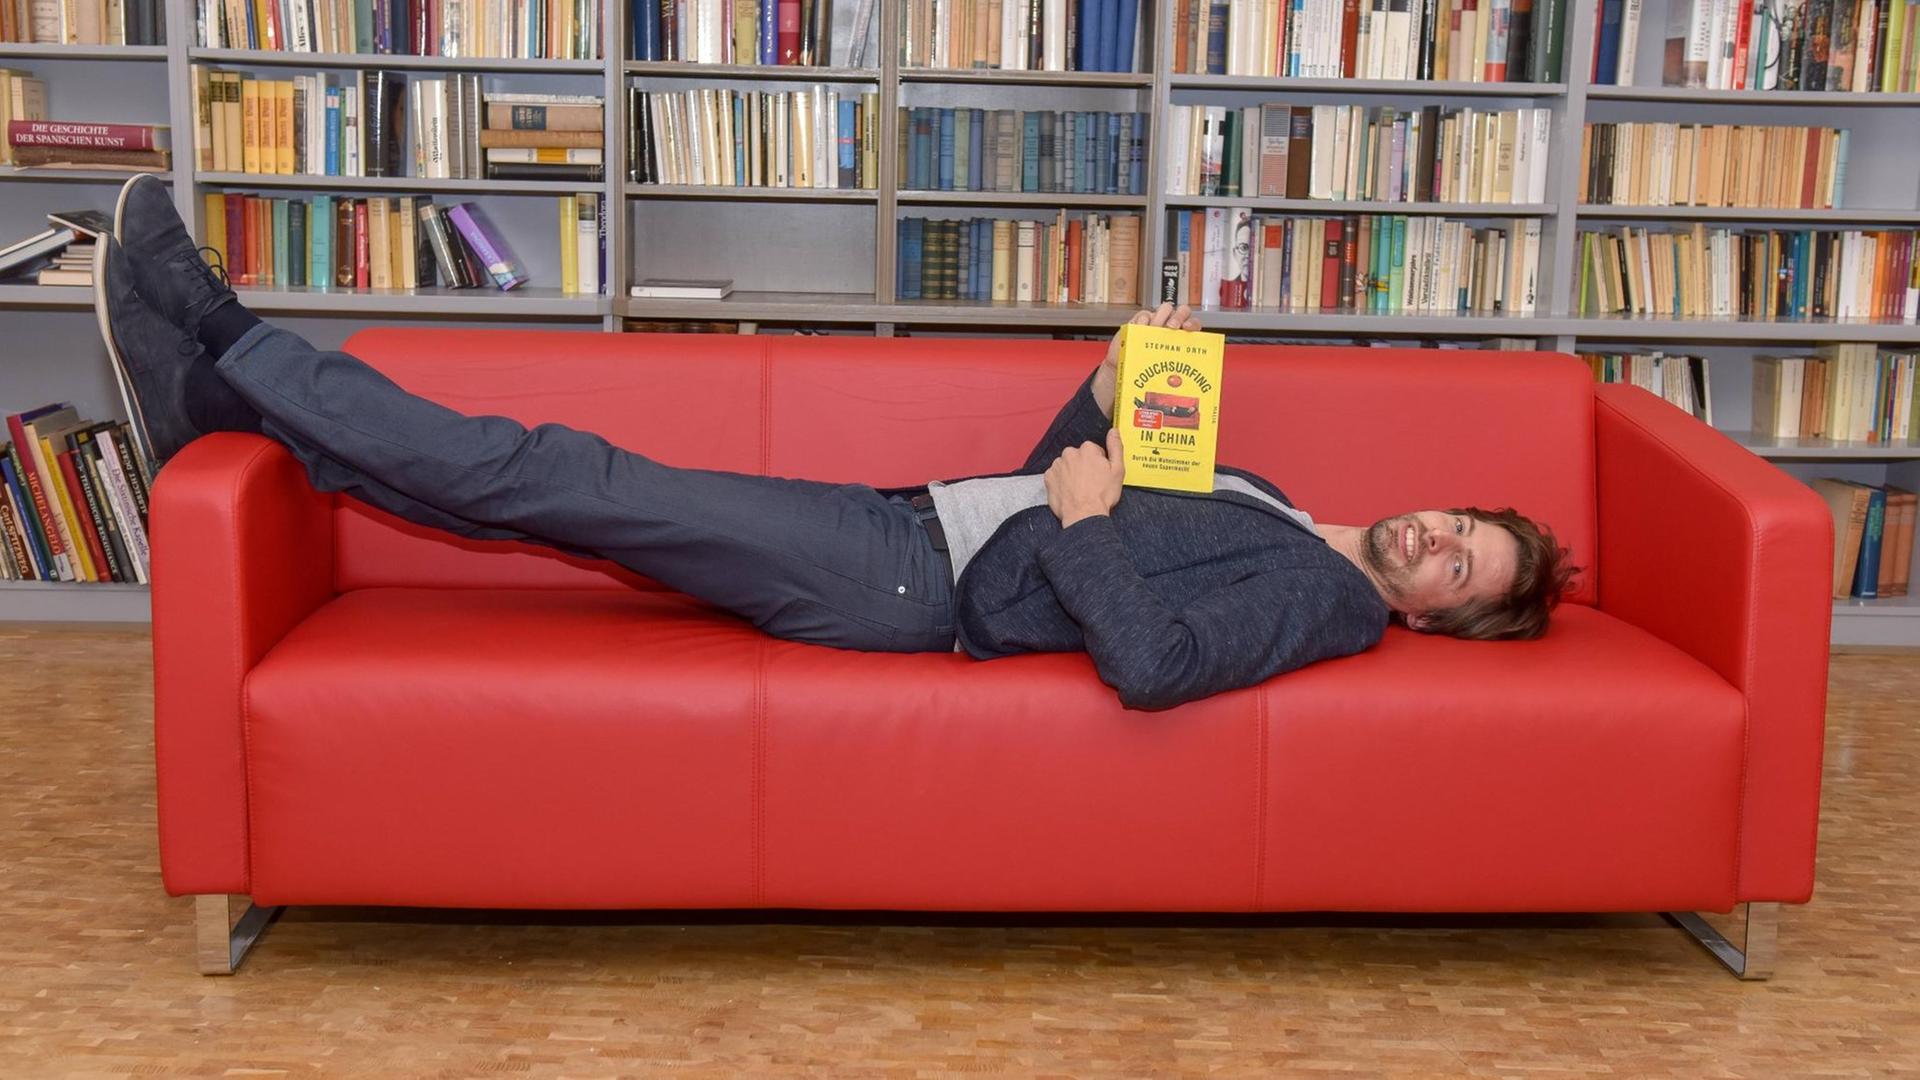 Stephan Orthliegt liegt auf einer roten Couch, einem Möbelstück, welches er auf Reisen als Couchsurfer in China in unterschiedlichen Formen vorgefunden hat. Die Erfahrungen aus dem Couchsurfing sind die Grundlage für sein neues Buch.